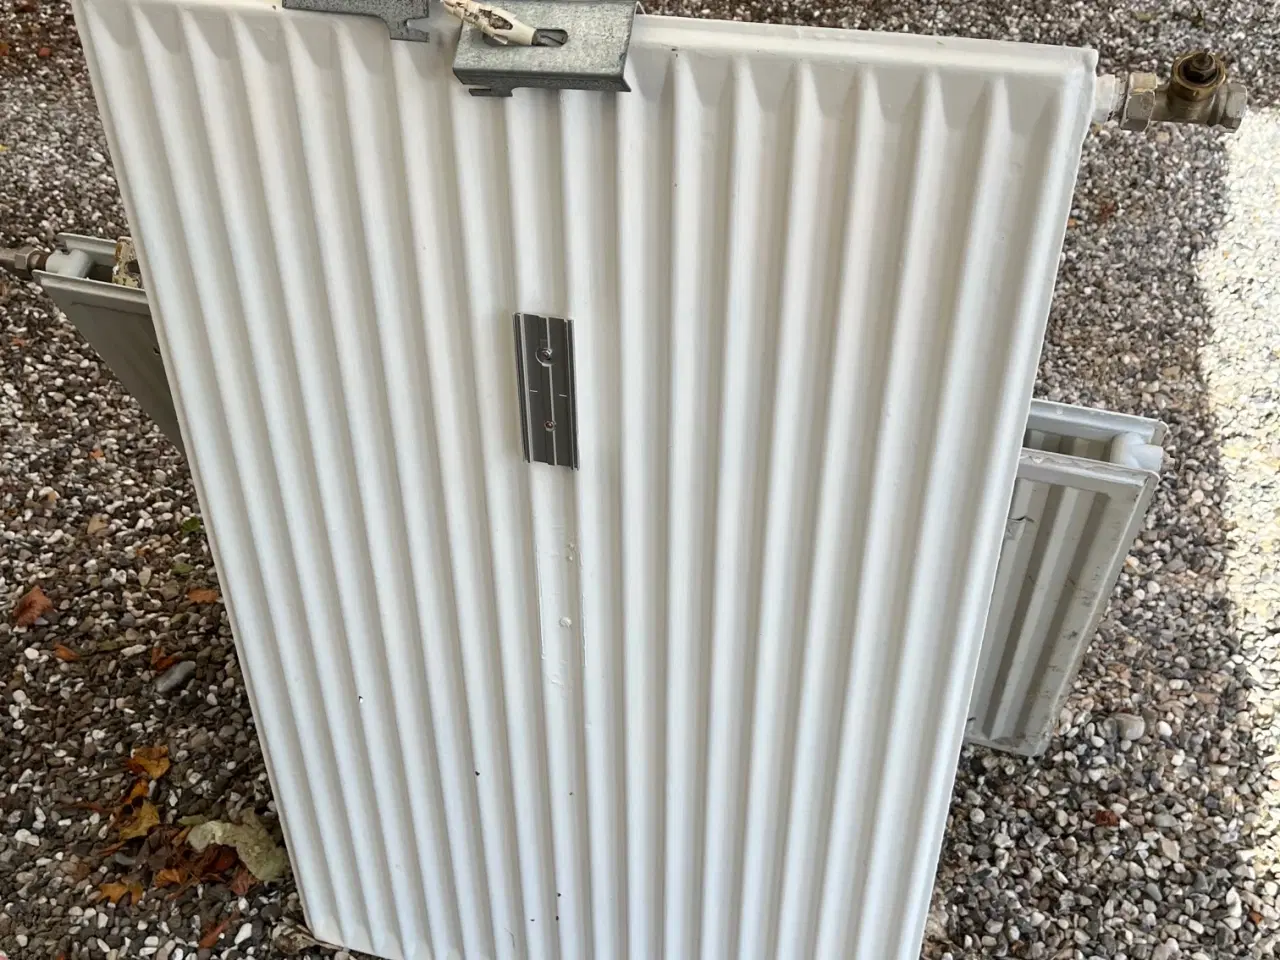 Billede 2 - Brugte radiatorer, 2 stk.